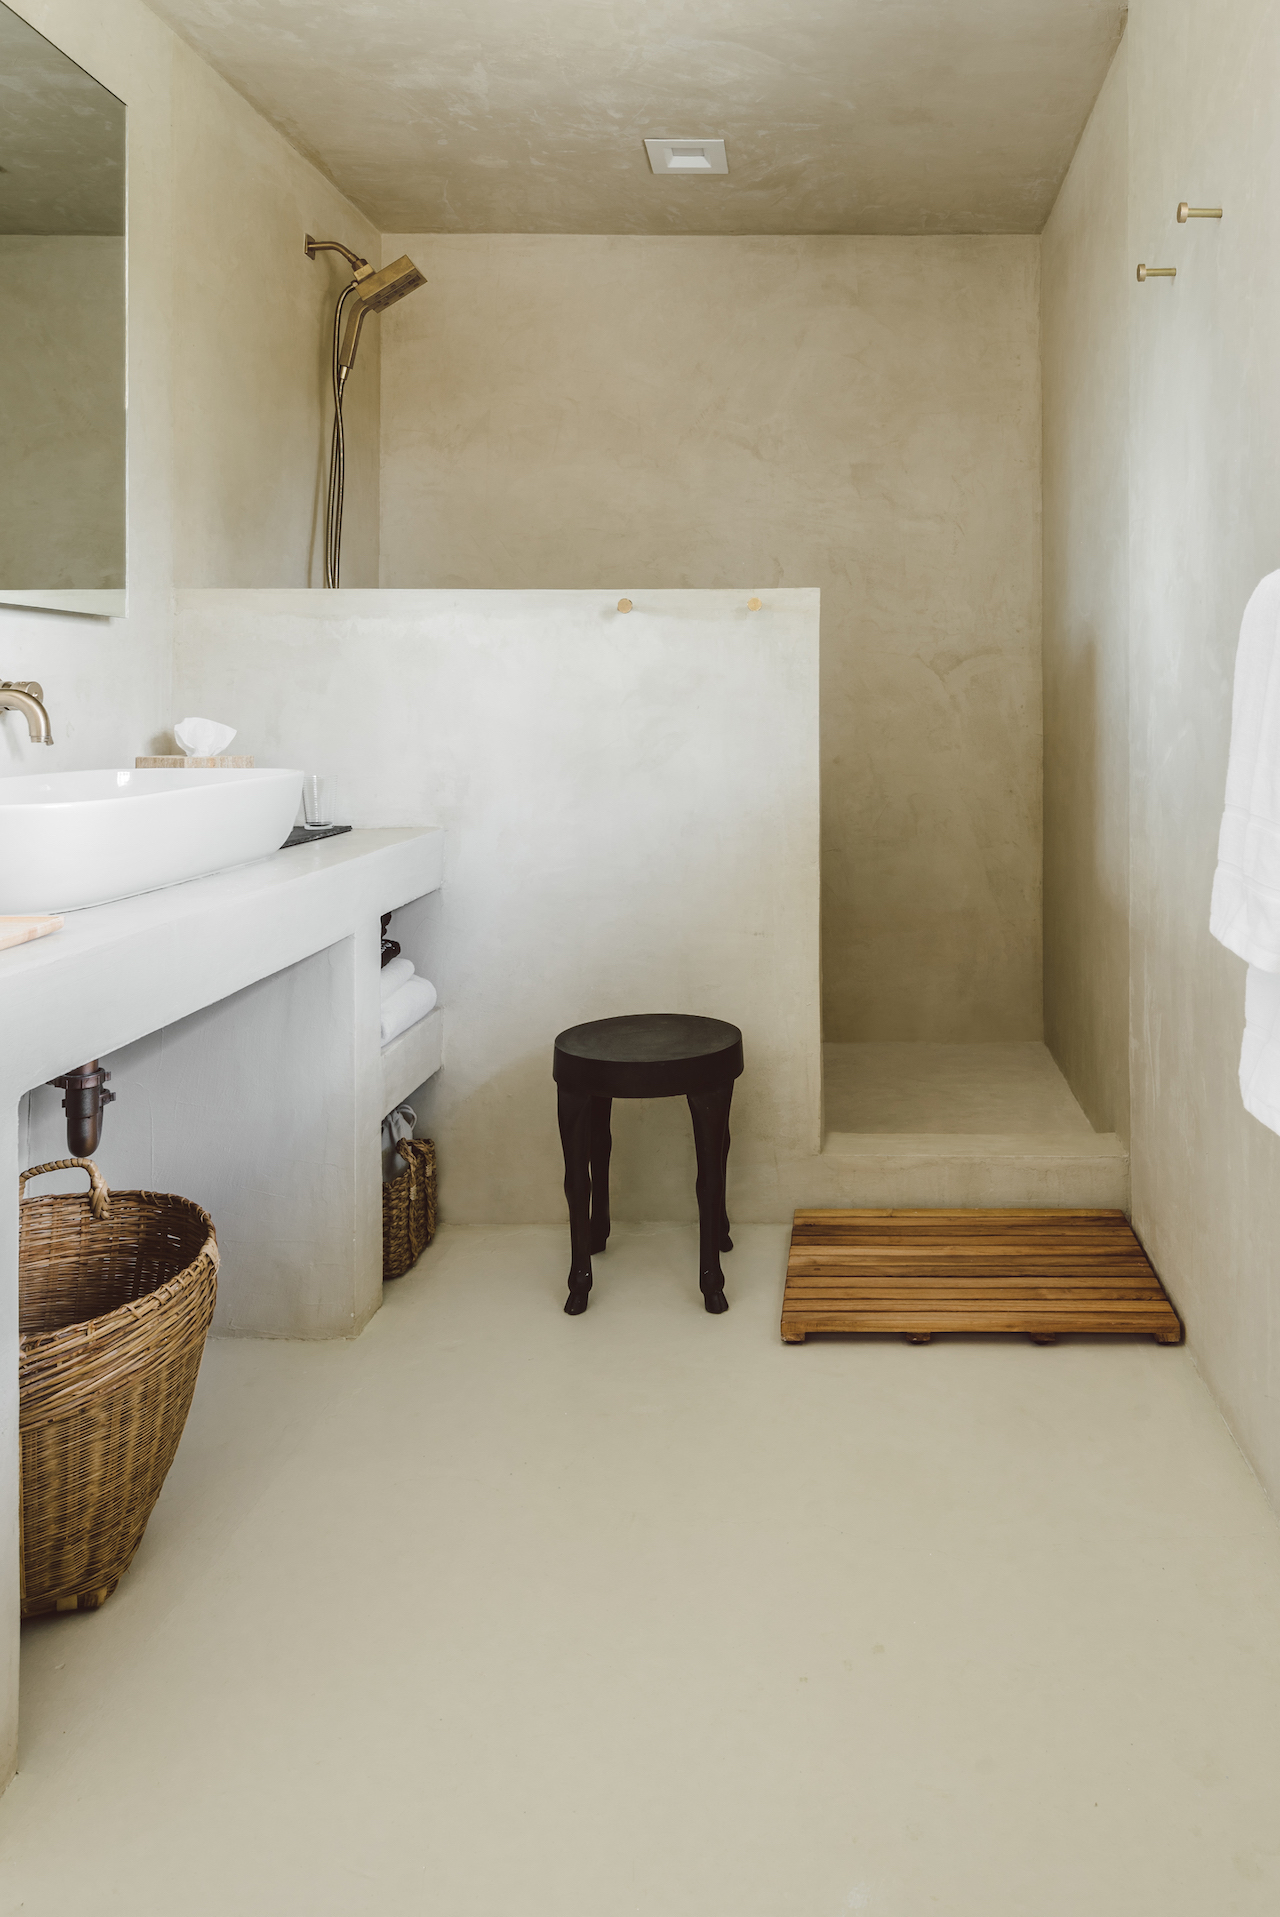 Phòng tắm và nhà vệ sinh cũng sử dụng các tone màu trung tính kết hợp nội thất vật liệu tự nhiên để thiết kế. Một bức tường lưng chừng được xây dựng để tạo sự riêng tư và phân vùng buồng tắm đứng với khu vực toilet, bồn rửa.